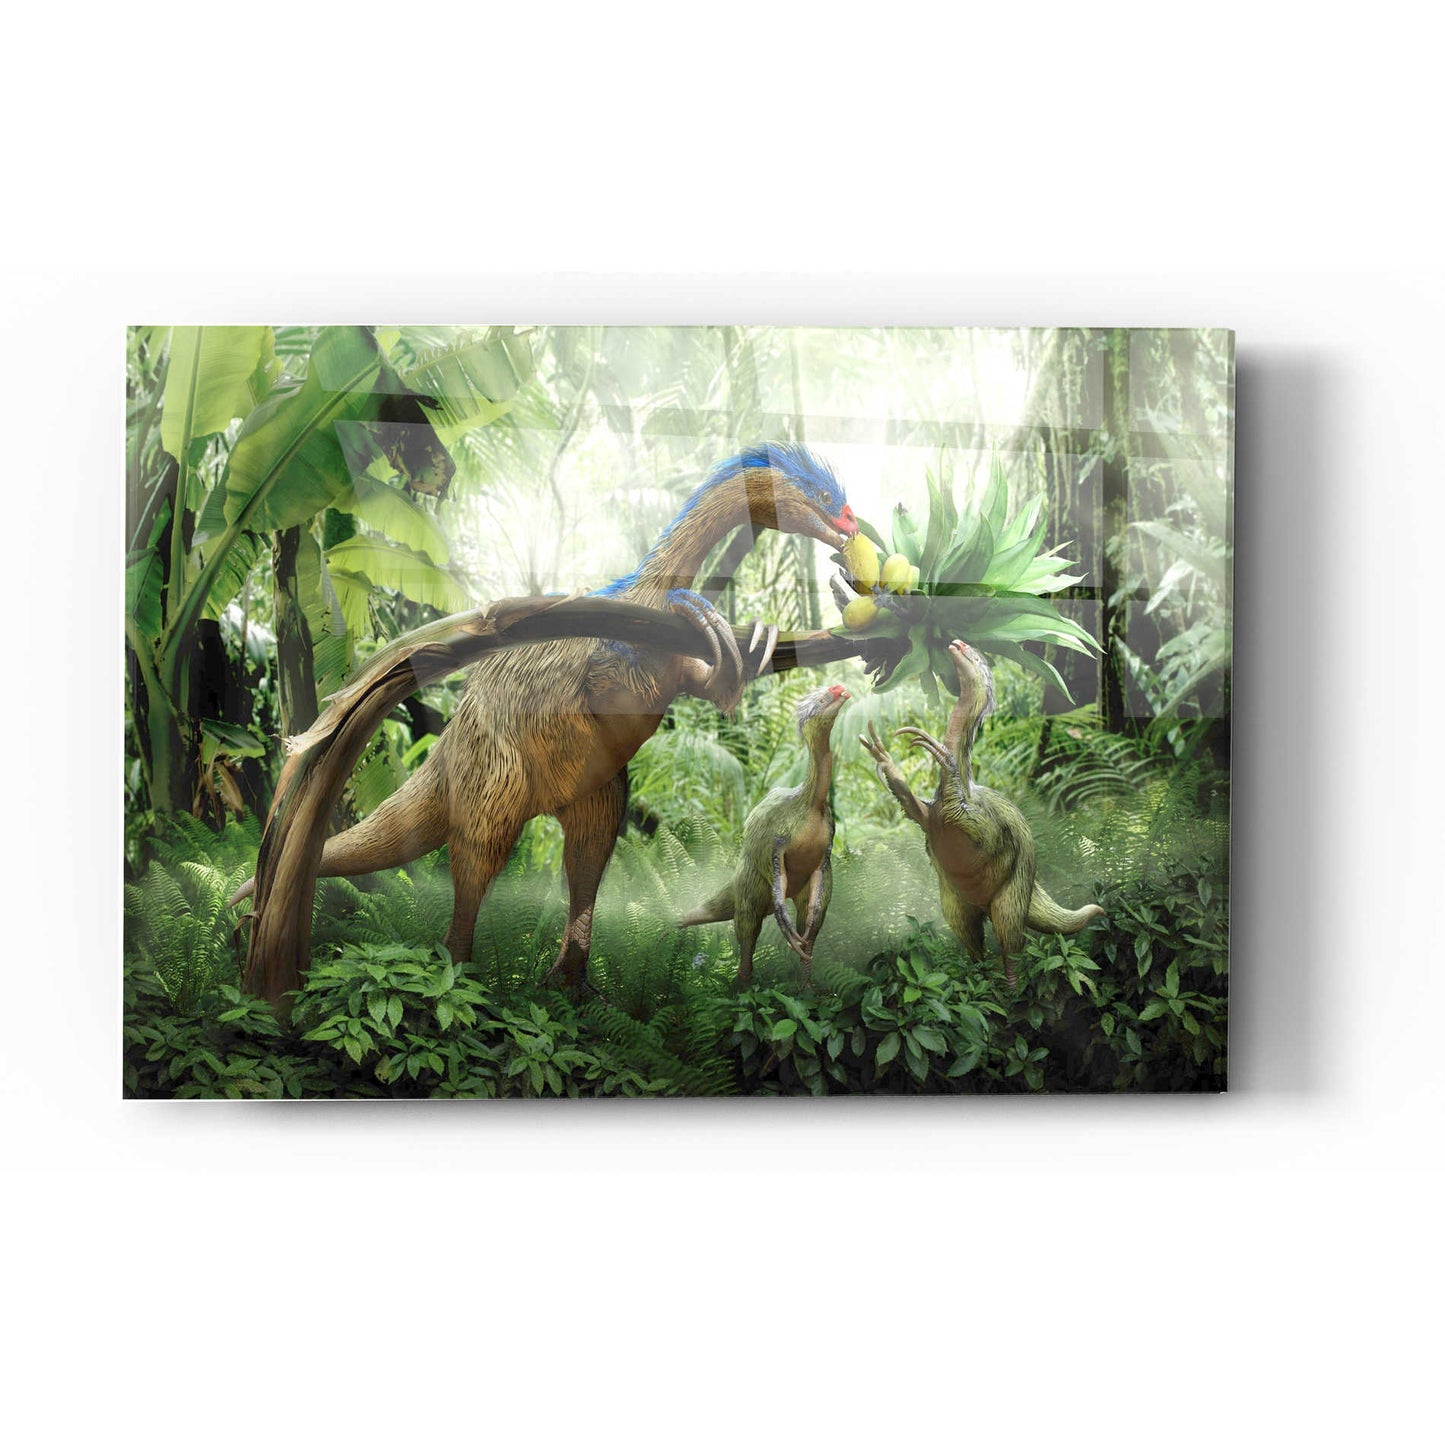 Epic Art 'Therizinosaurus' Acrylic Glass Wall Art,24x36